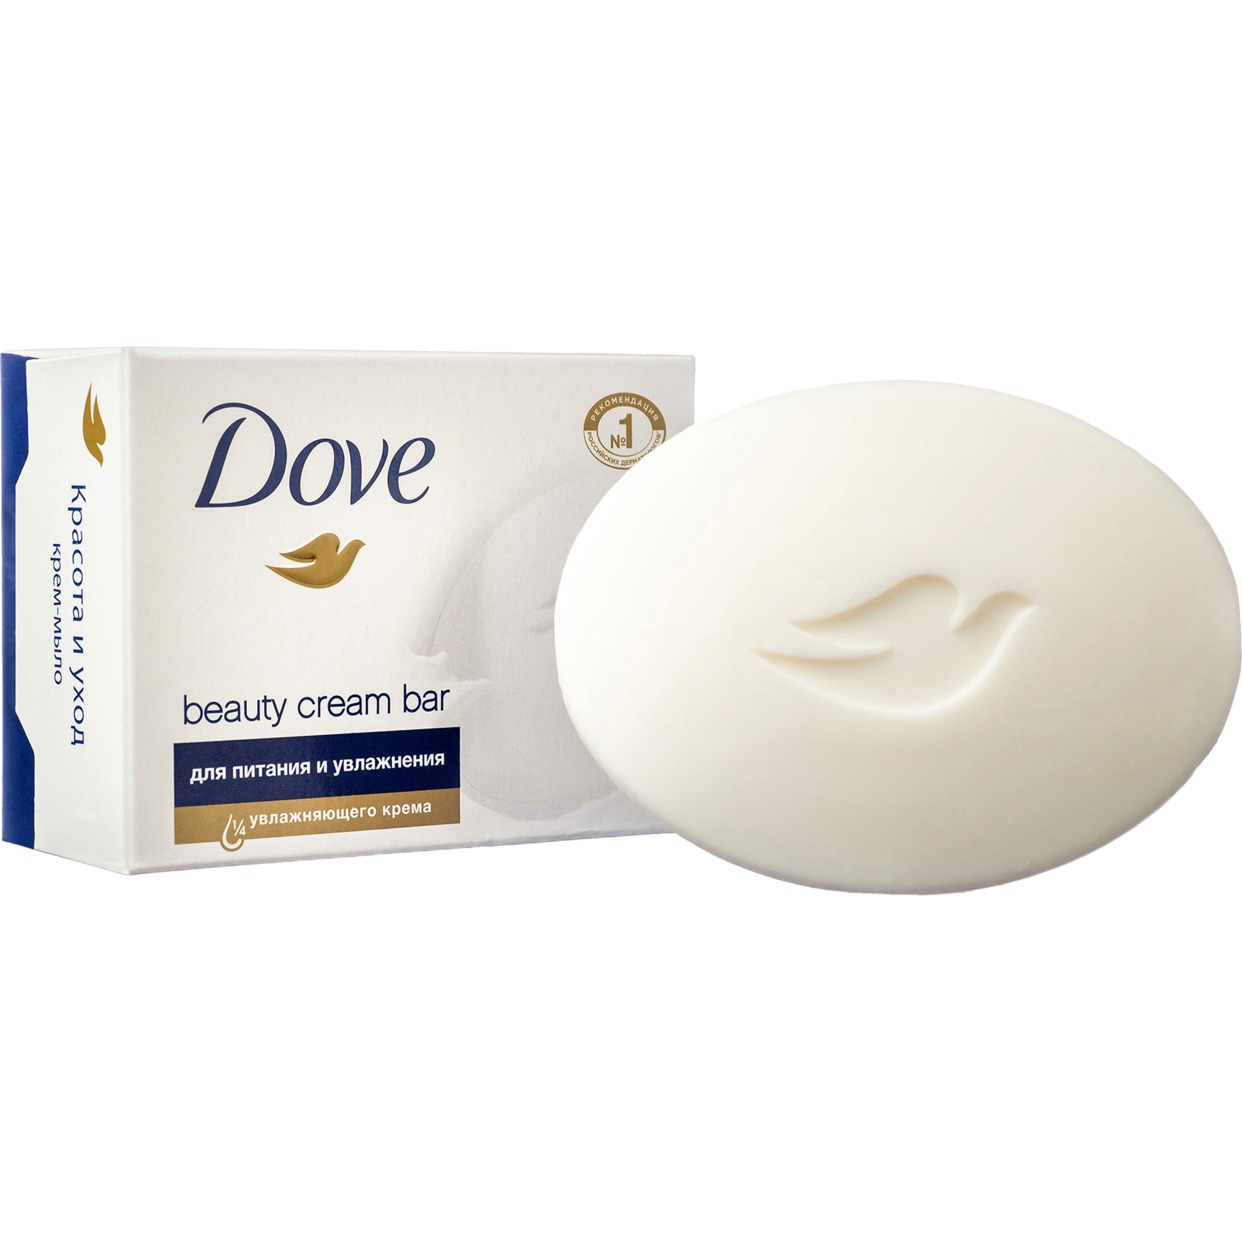 Крем-мыло Dove, красота и уход, 135 г по акции в Пятерочке